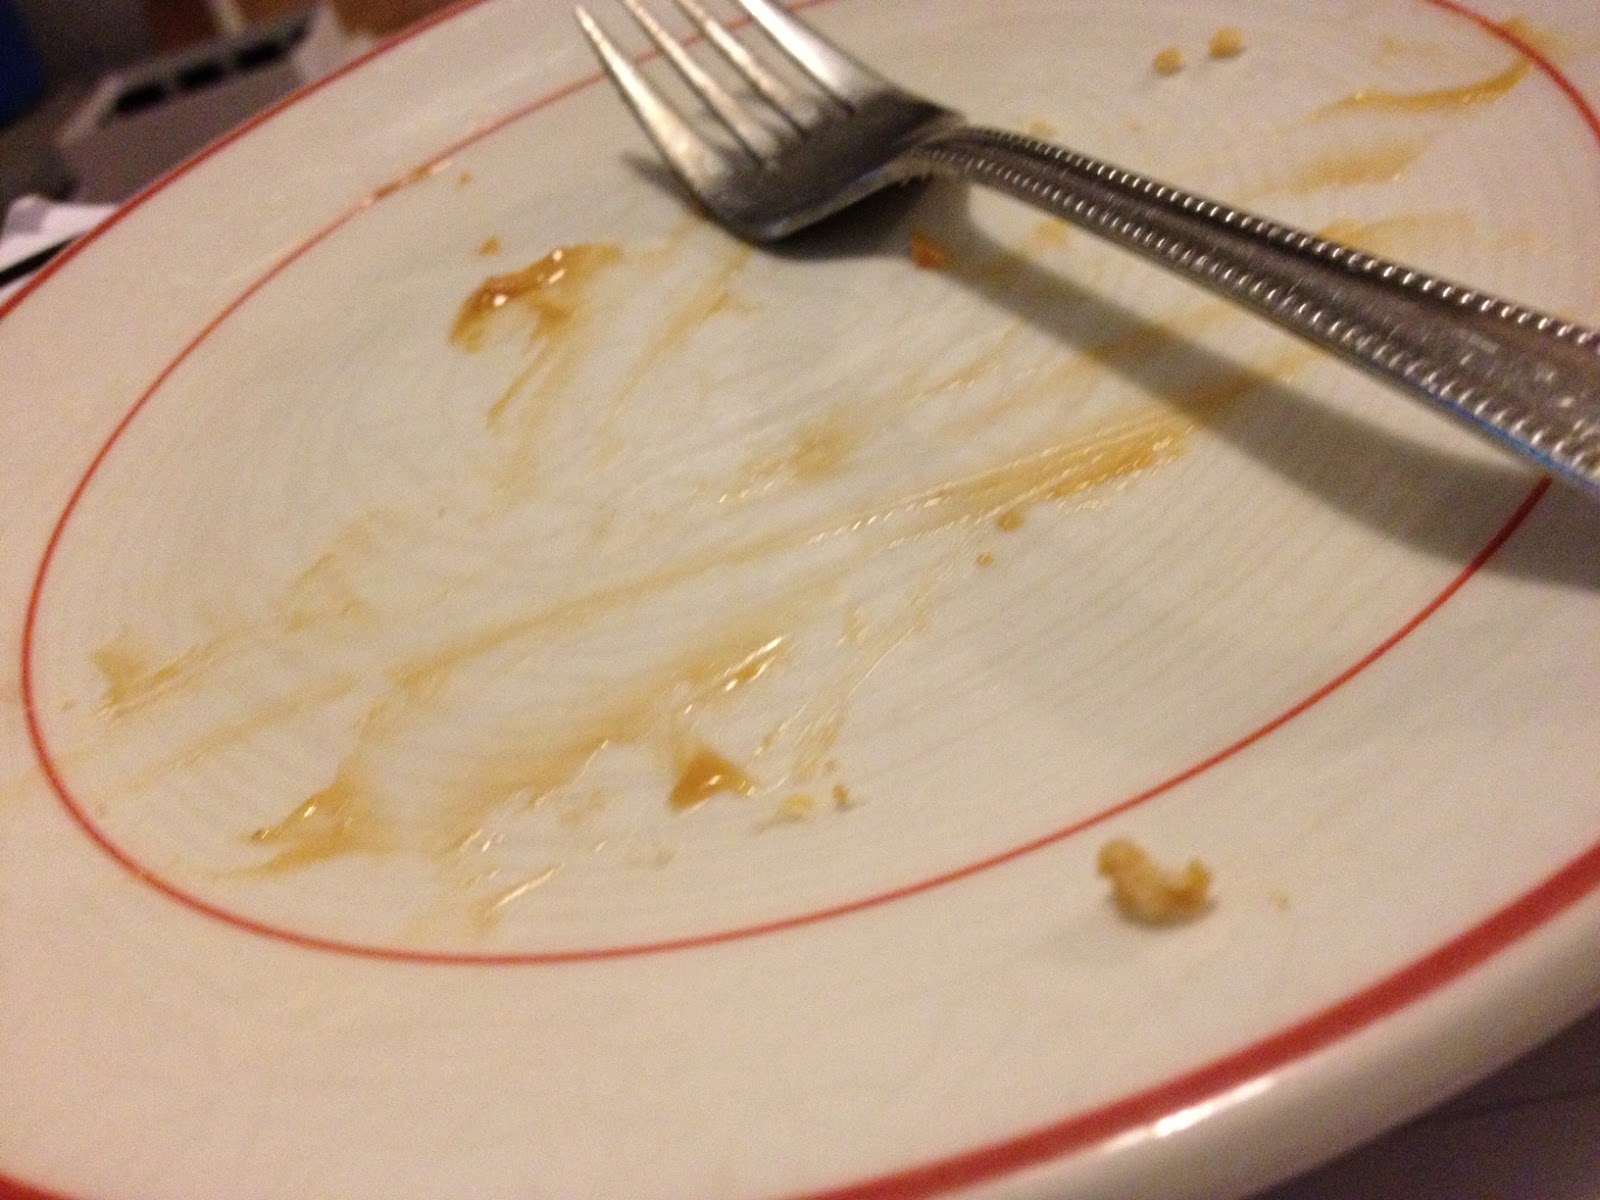 A plate scraped clean